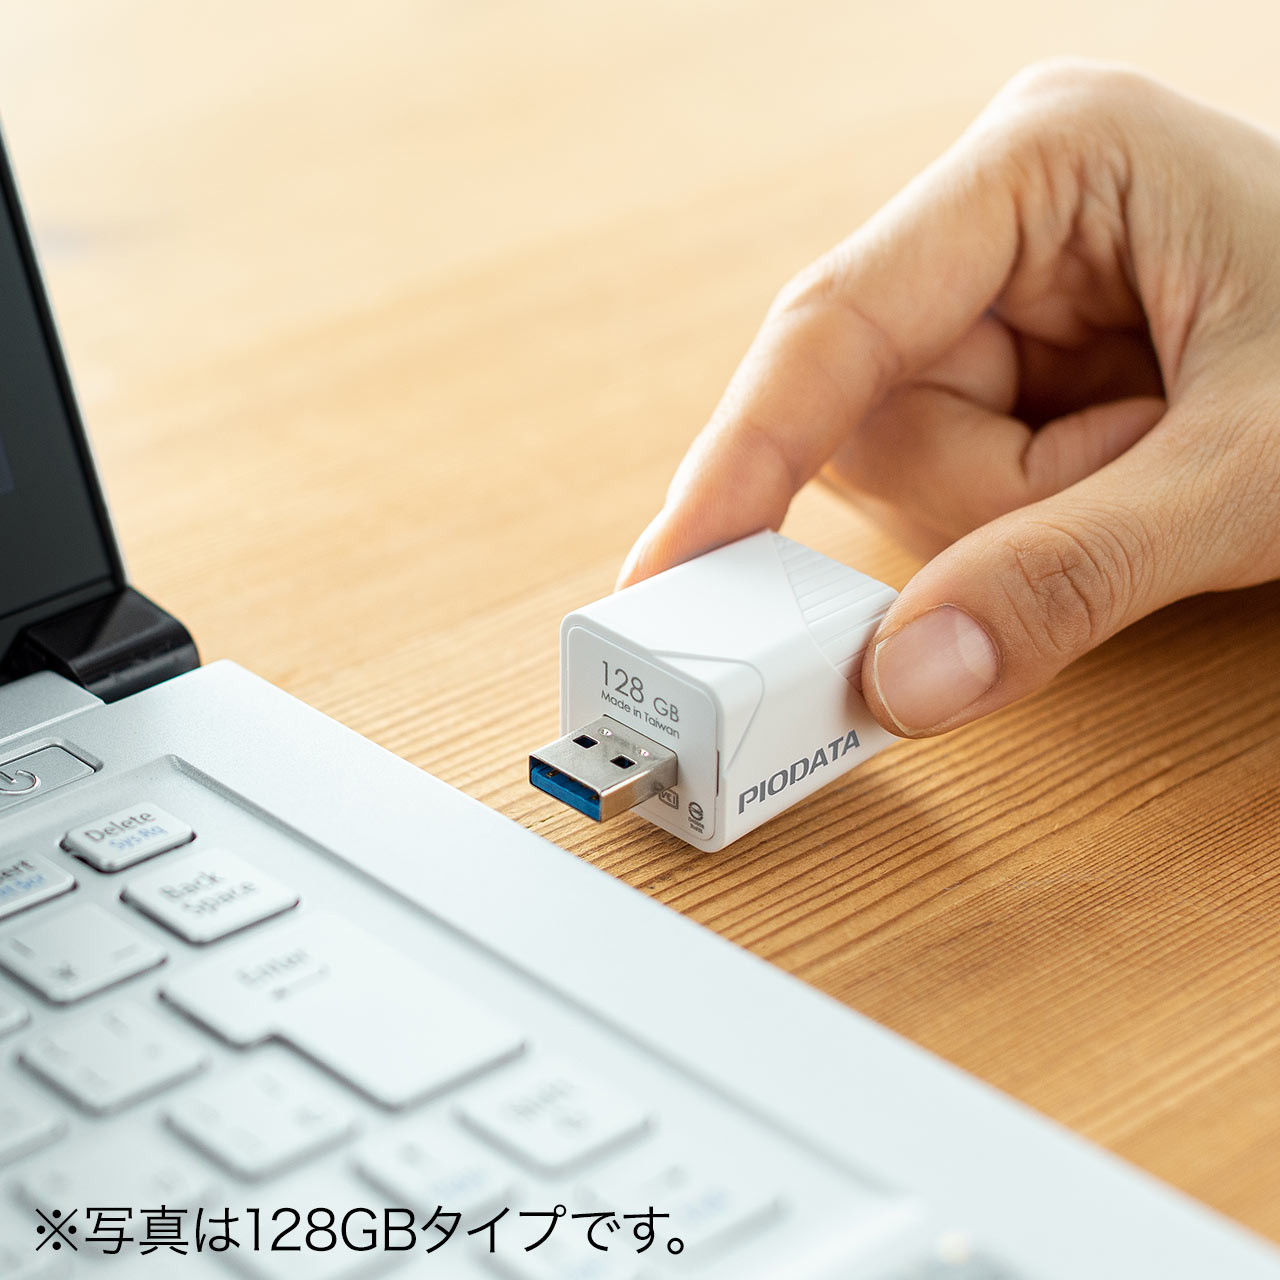 【メモリセール】iPhone iPad バックアップ USBメモリ 512GB MFi認証  USB3.2 Gen1(USB3.1/3.0) 600-IPLA512GB3